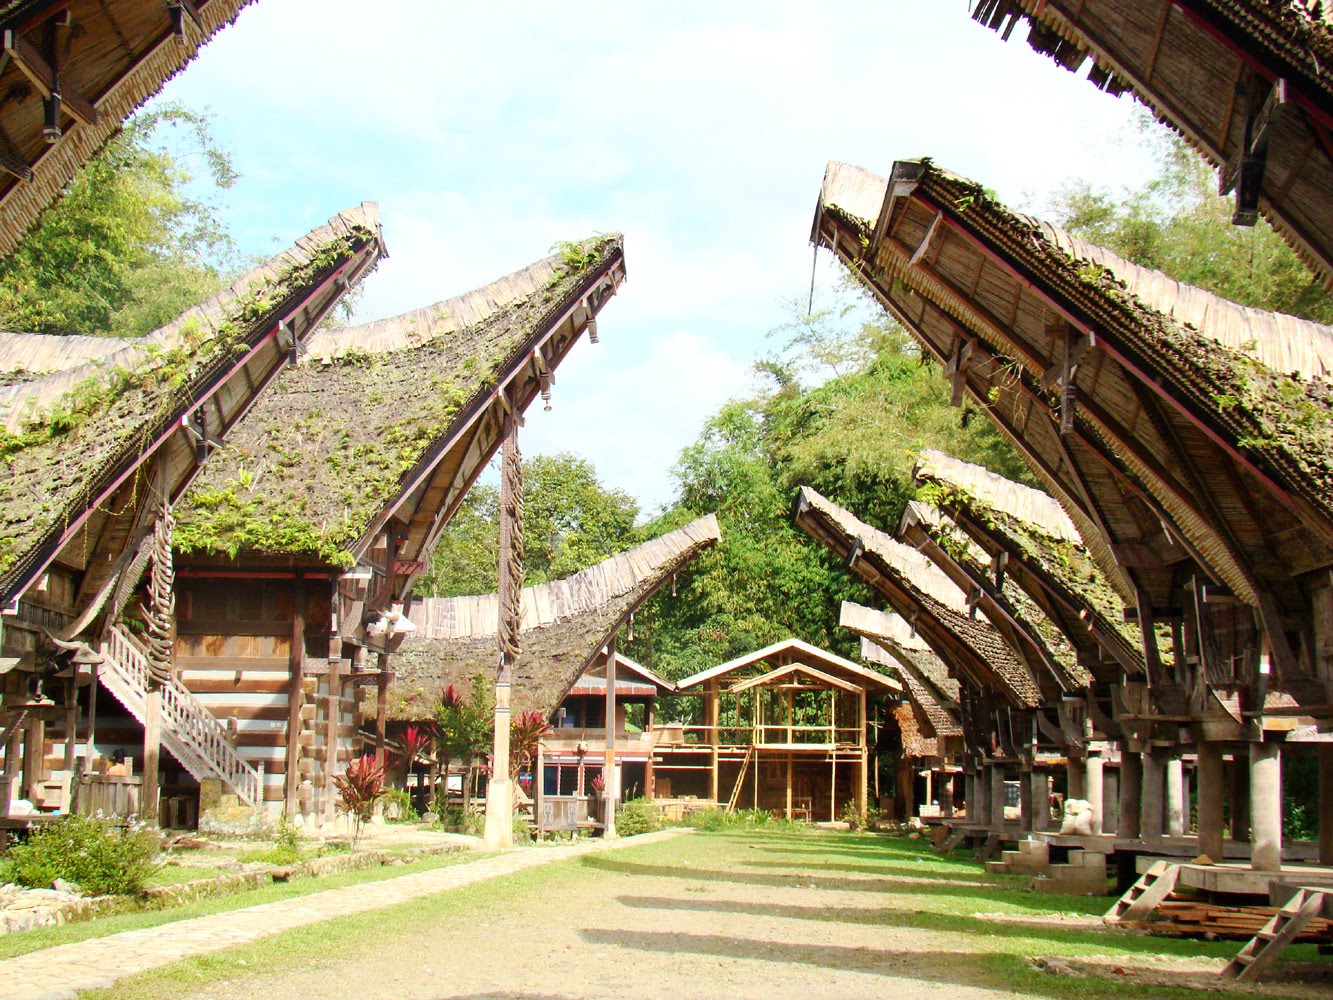 Download this Rumah Tongkonan Tana Toraja picture